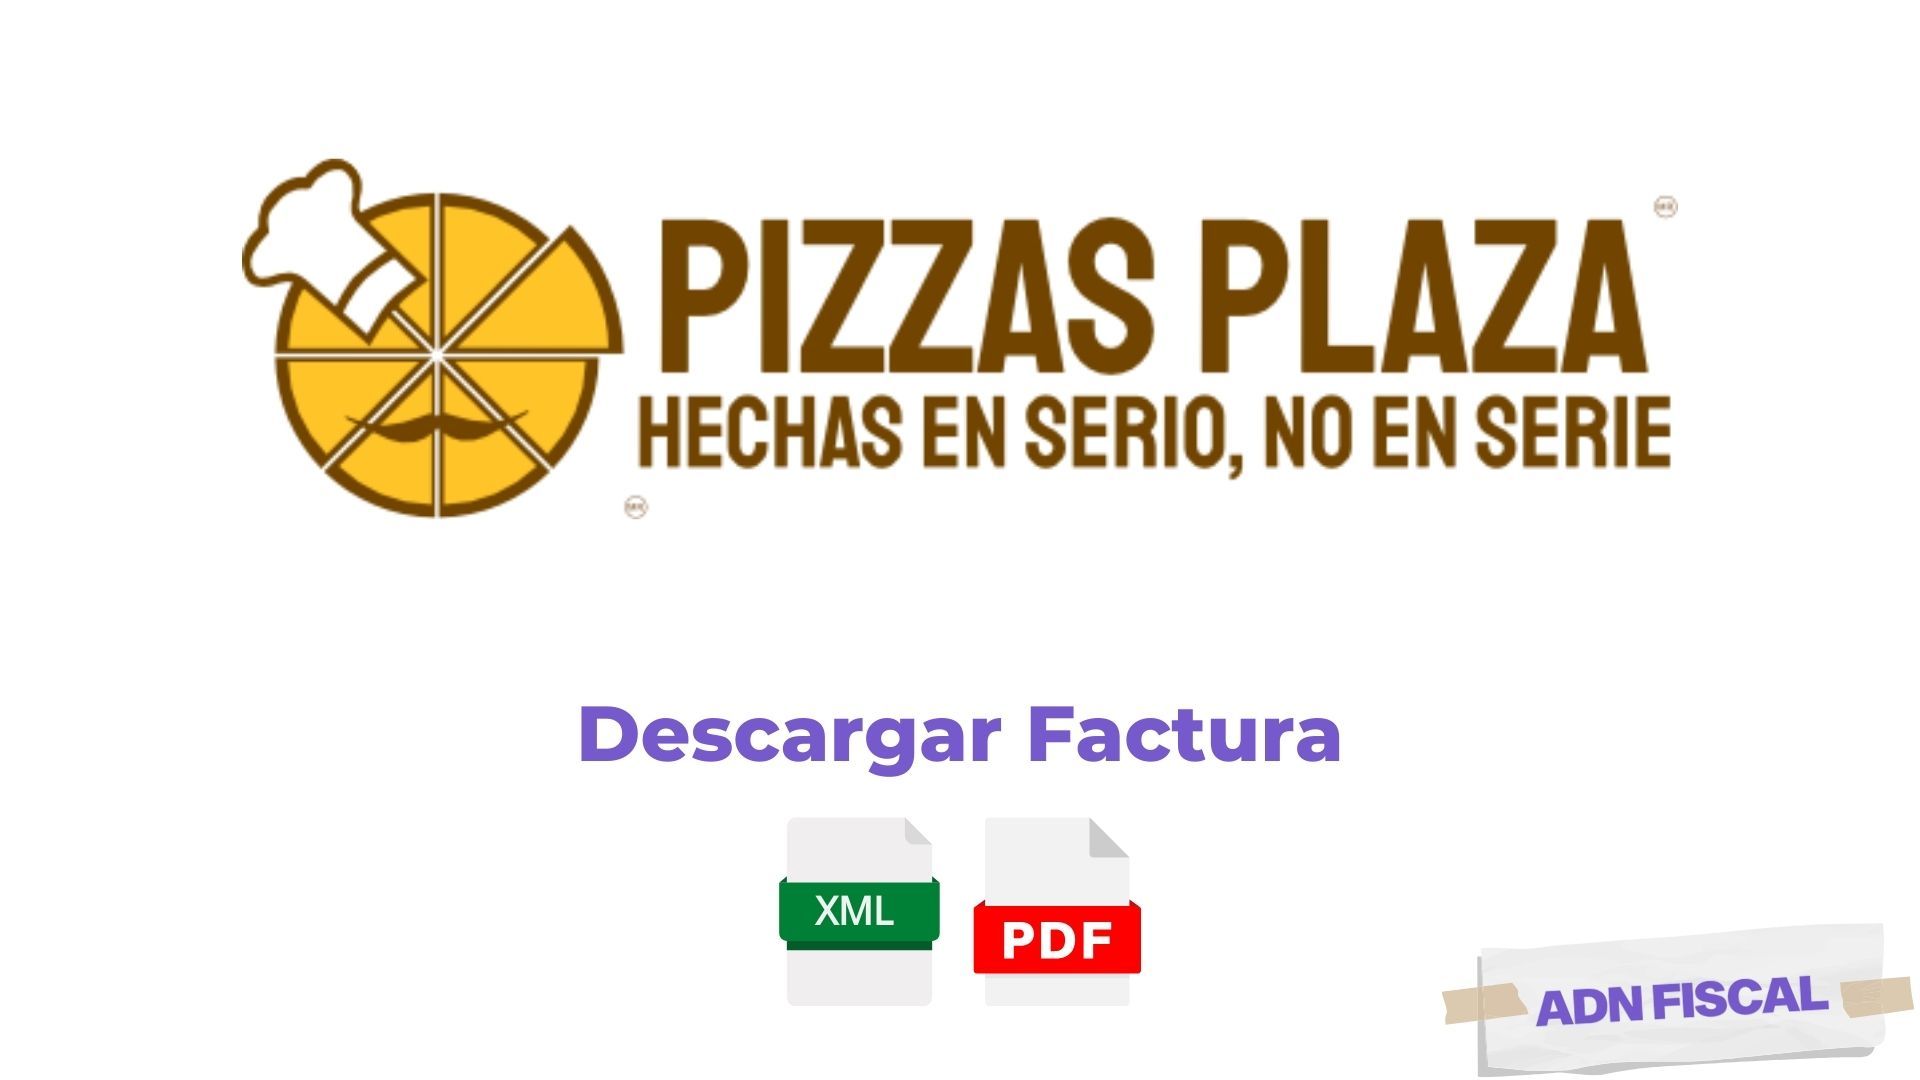 Facturacion Pizzas Plaza Facturacion ADN Fiscal